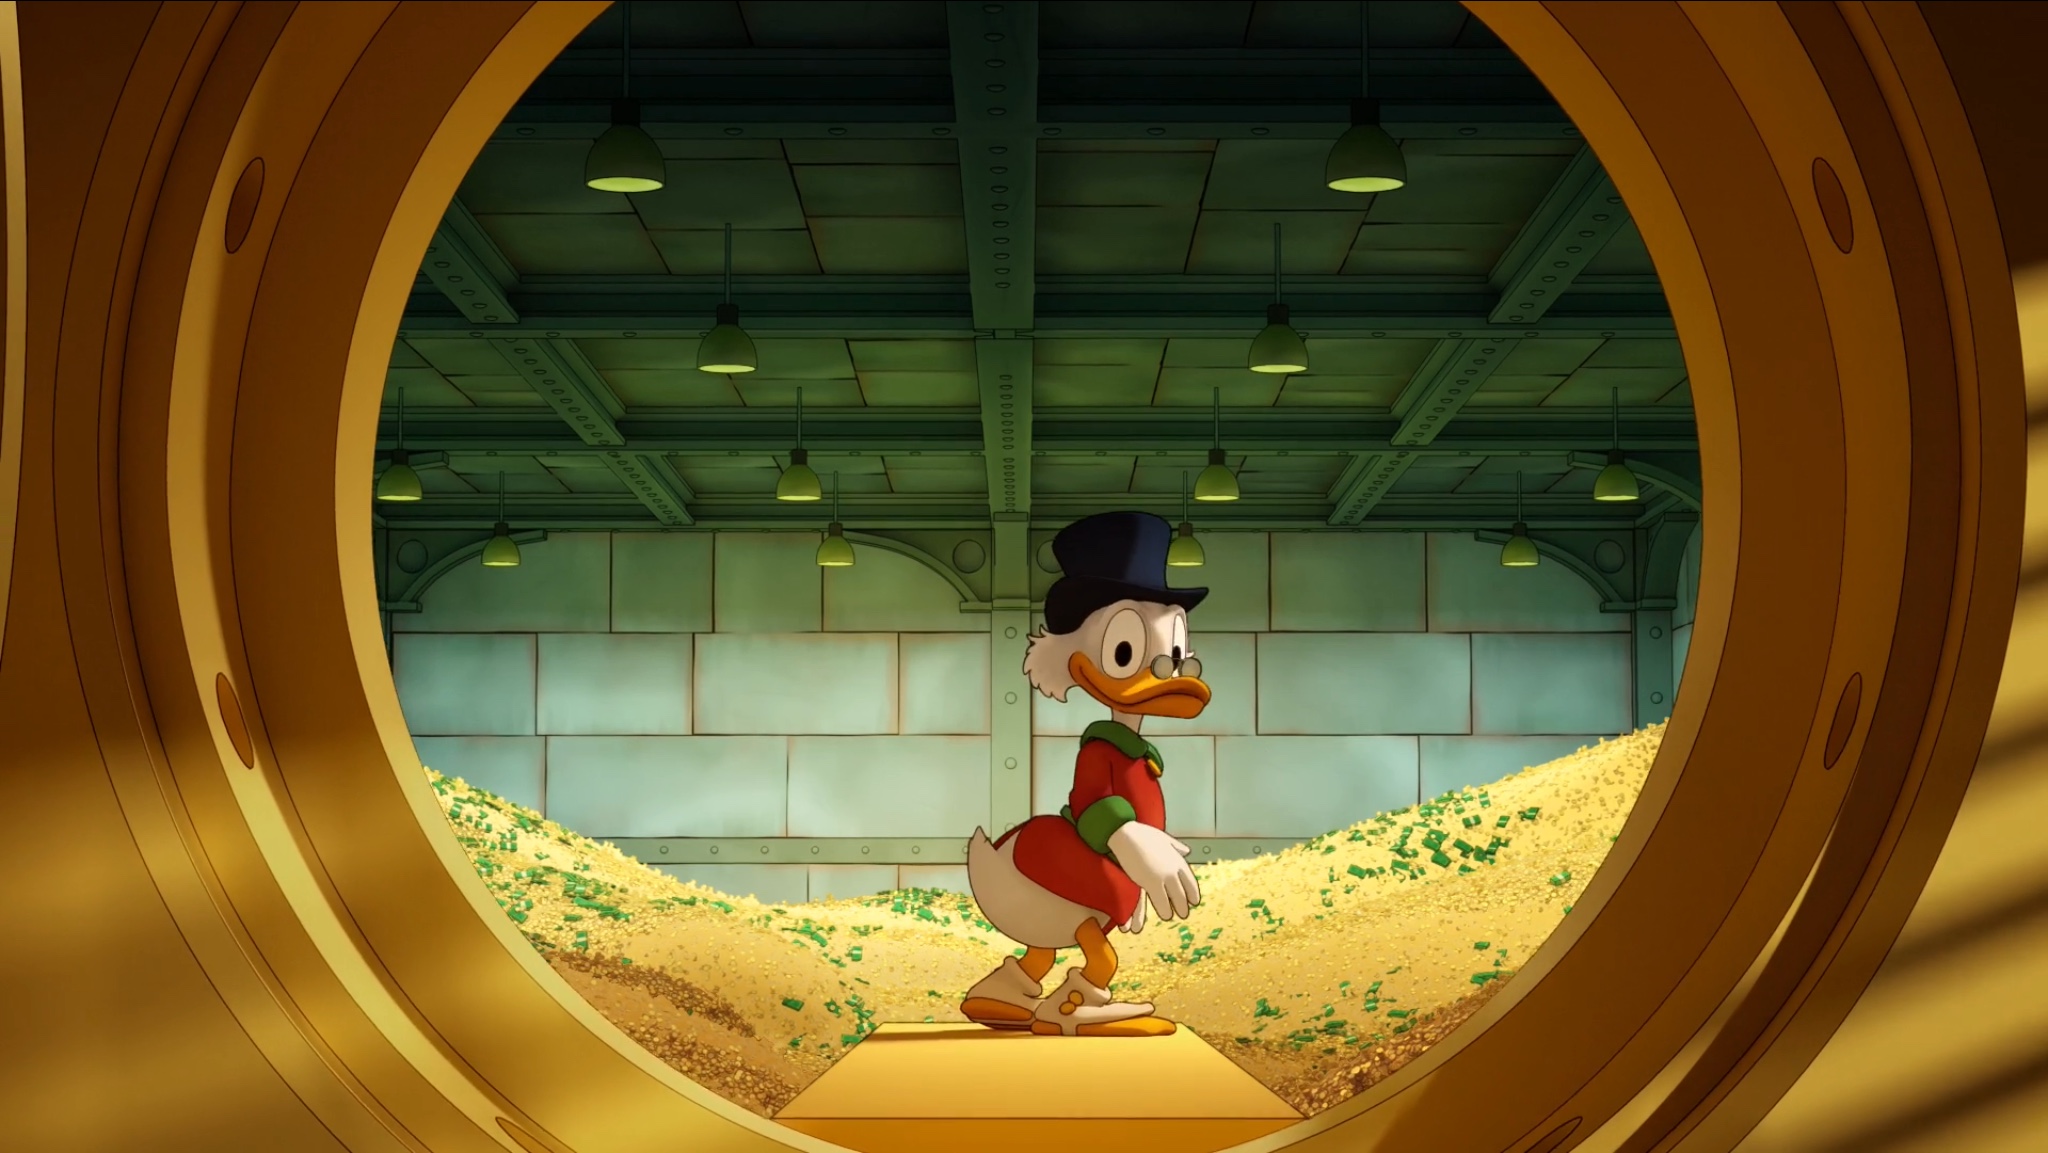 Scrooge McDuck | Disney Wiki | Fandom